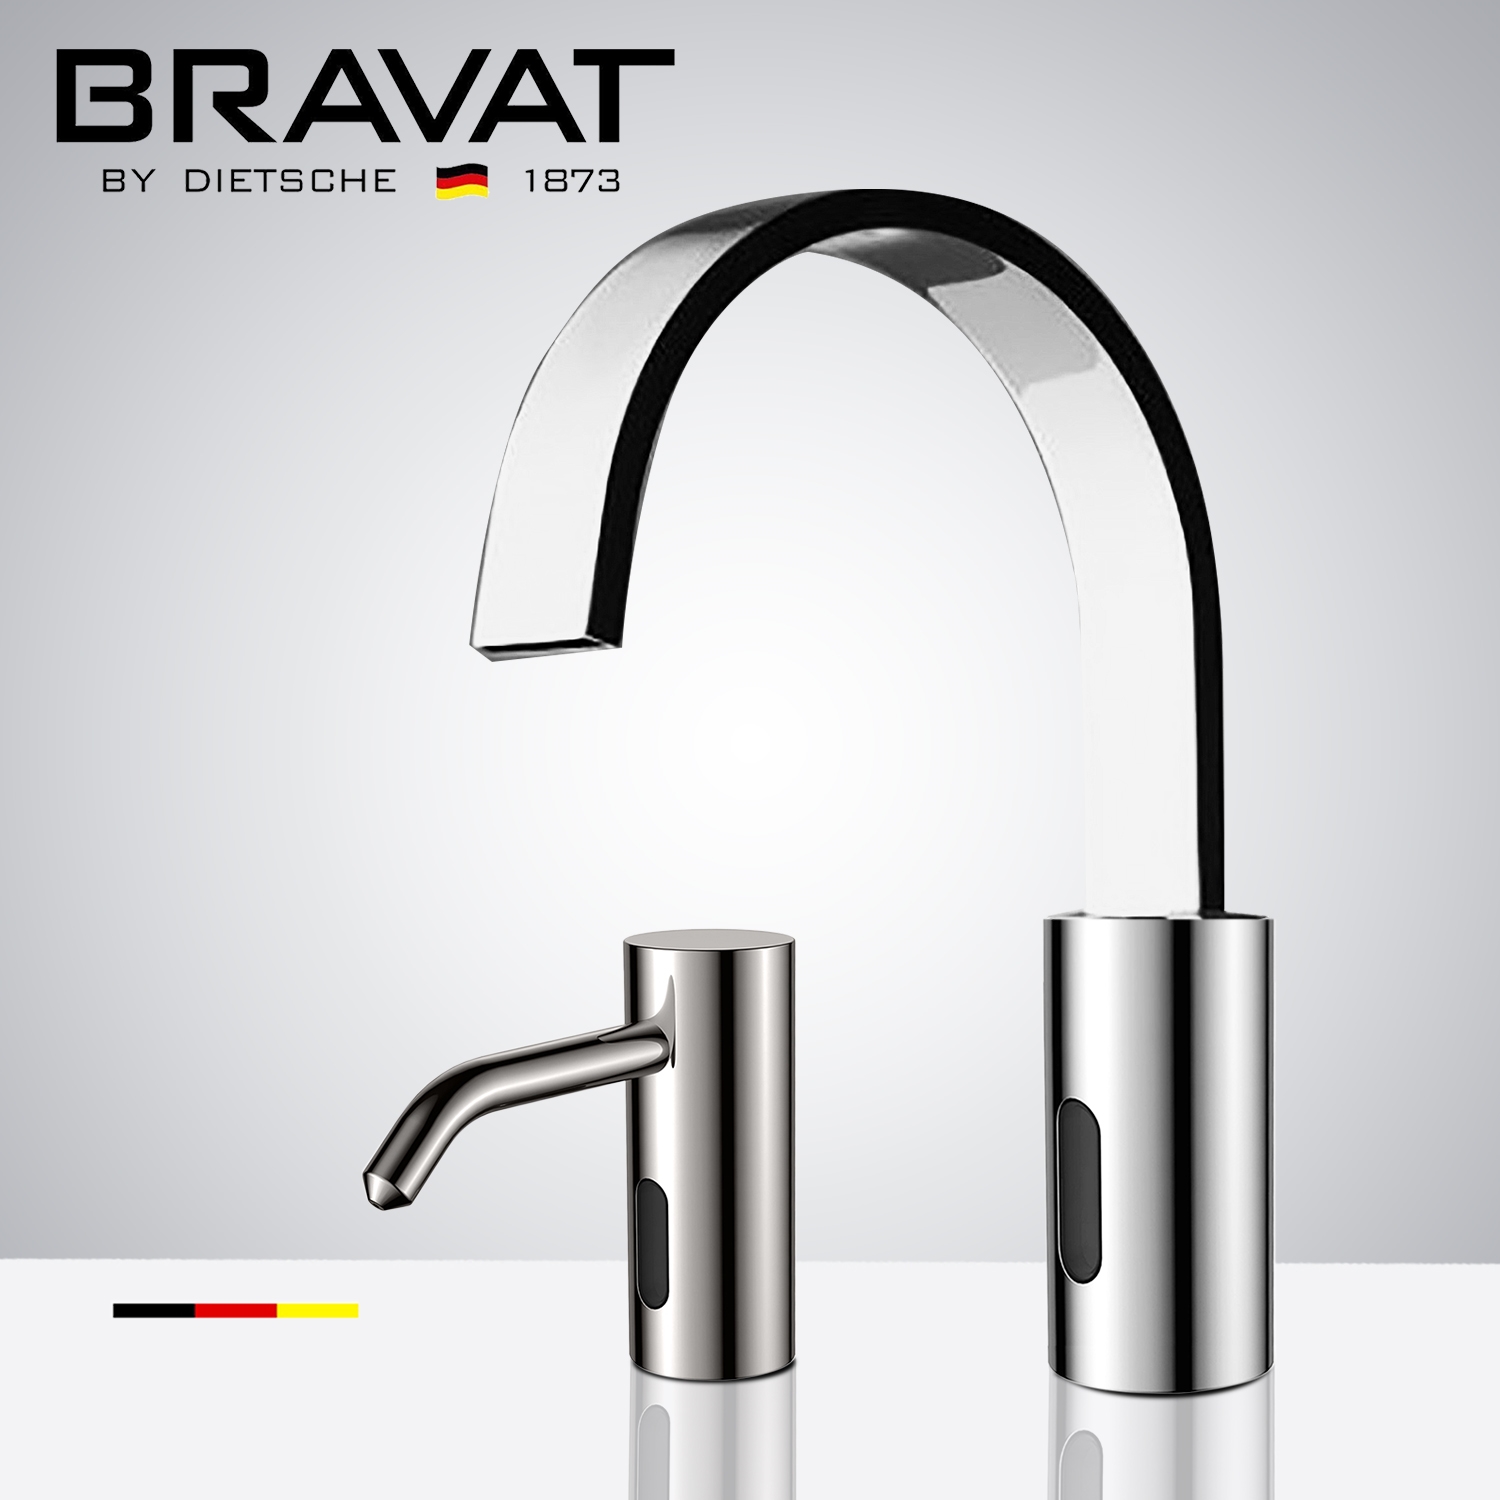 DUPLICATE Fontana Bravat Freestanding Automatic Commercial Sensor Faucet & Automatic Soap Dispenser